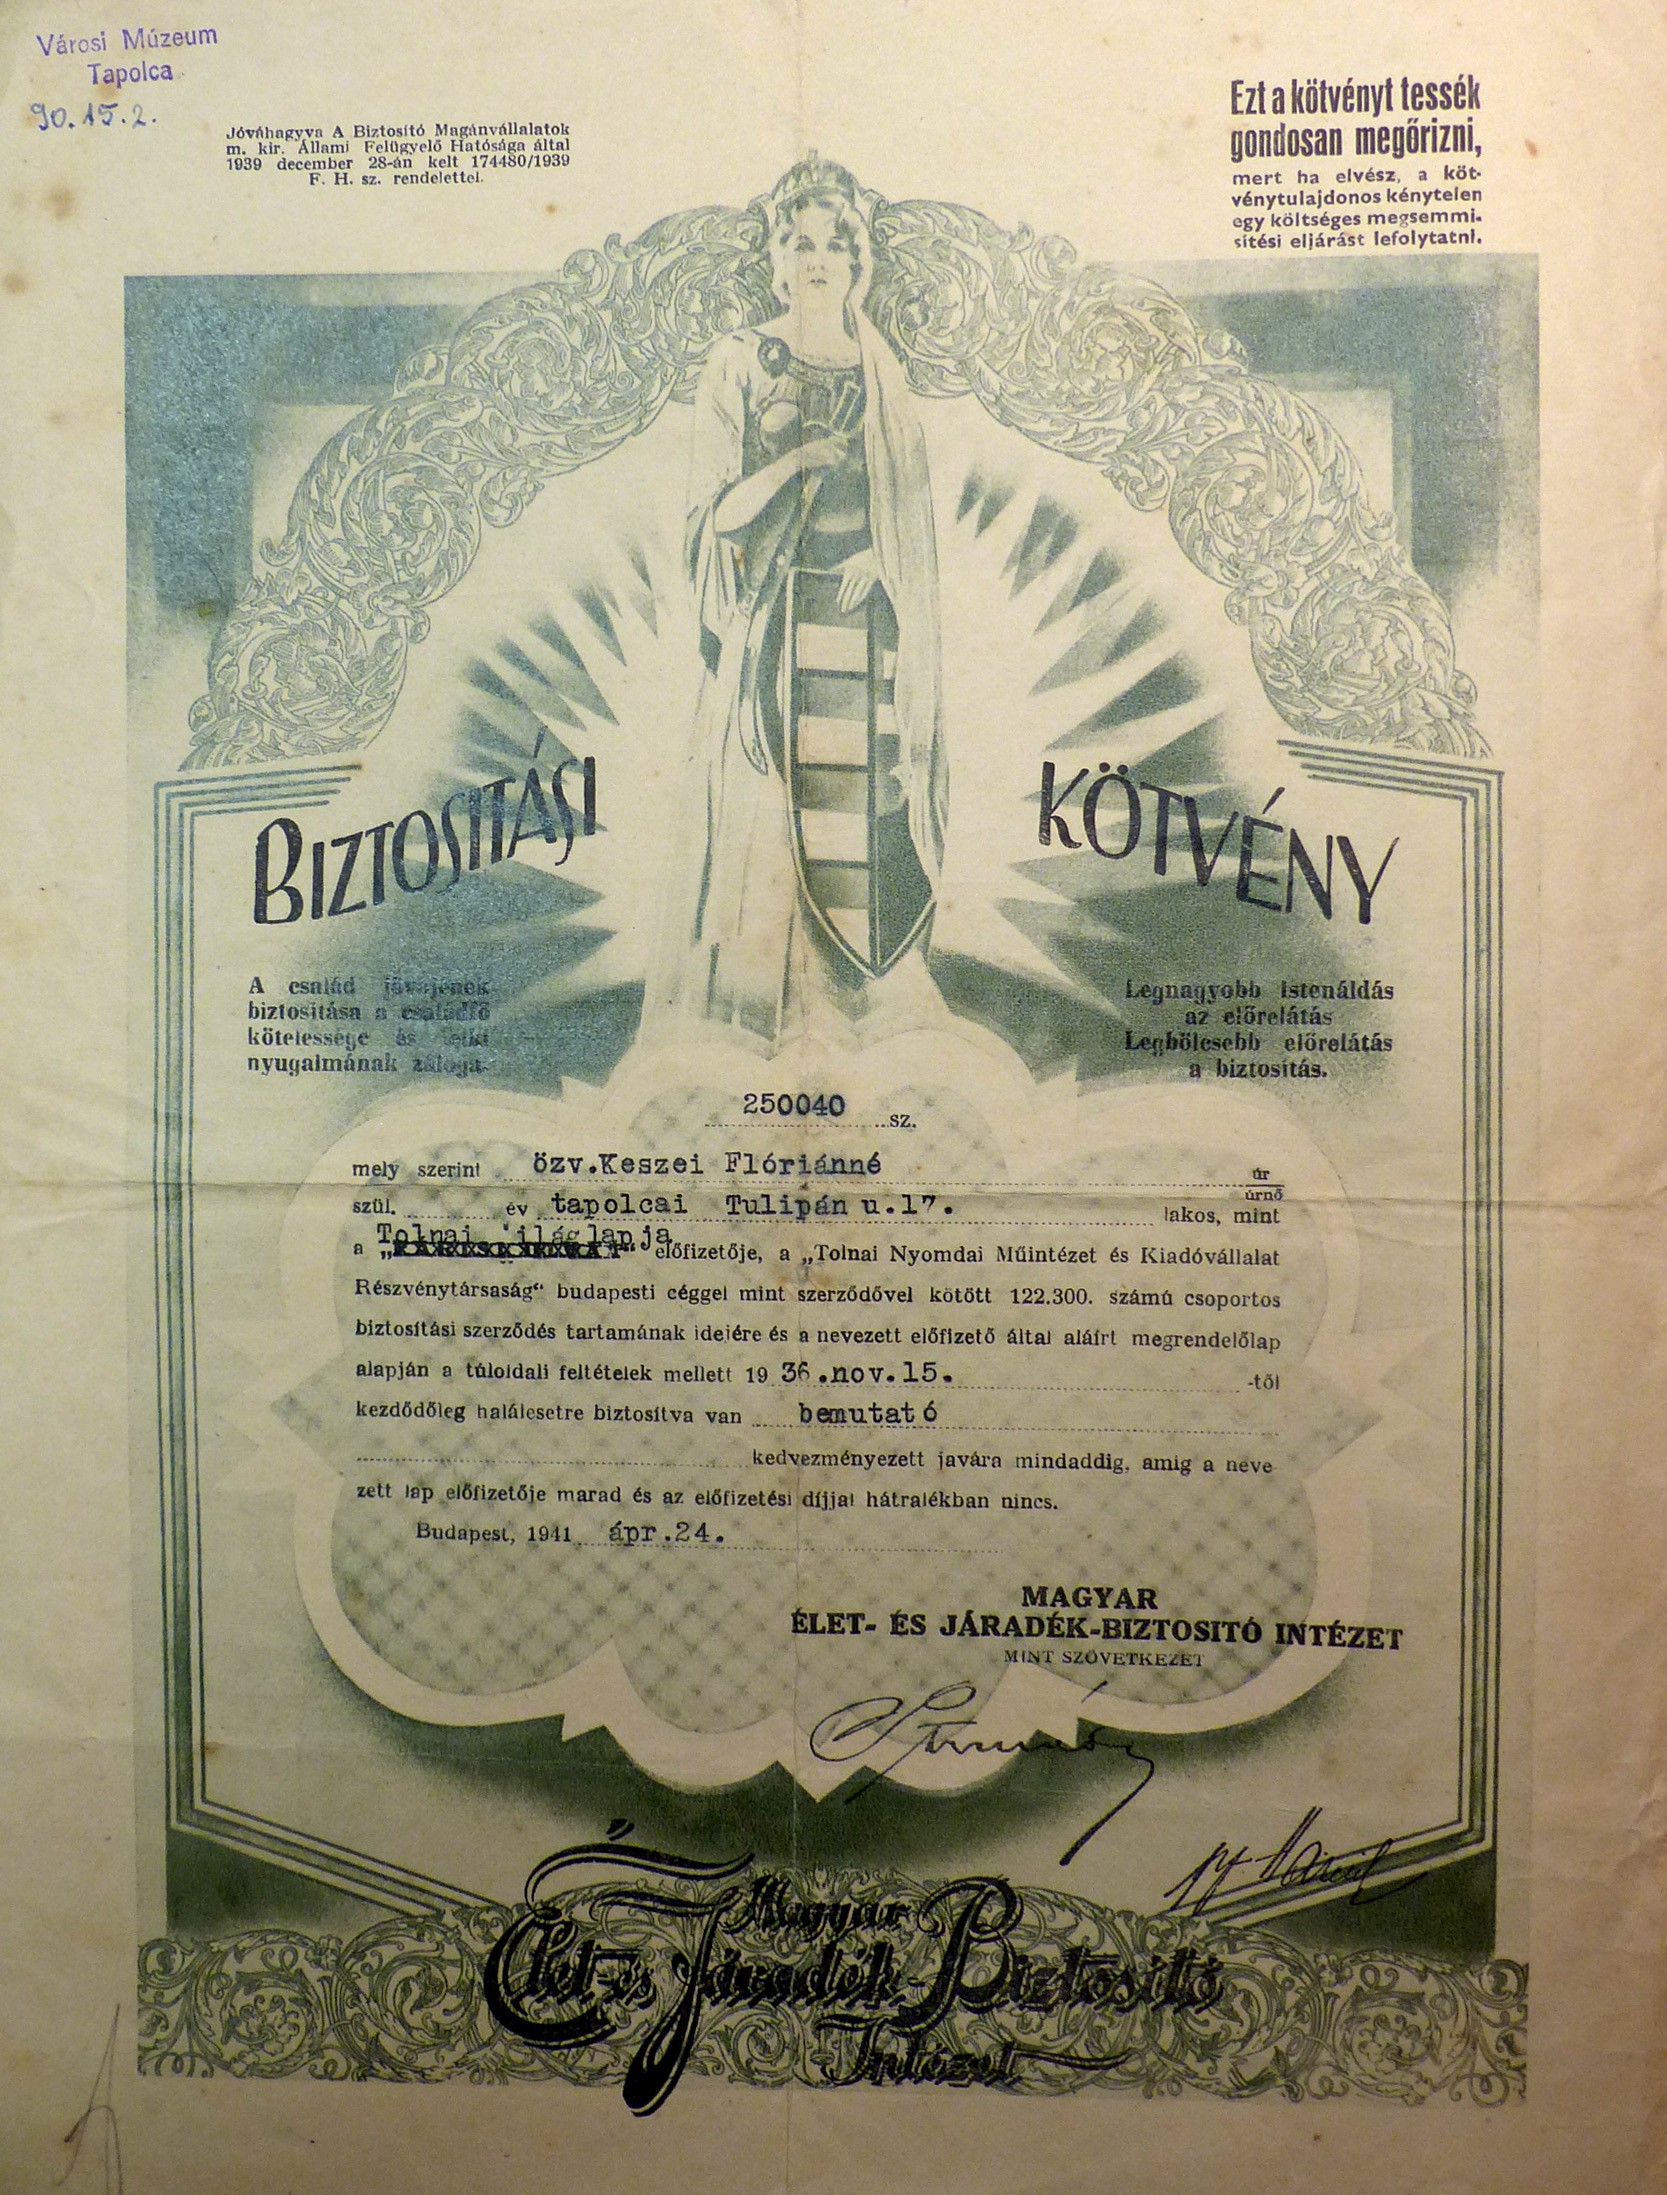 Biztosítási kötvény 1941 (Tapolcai Városi Múzeum CC BY-NC-SA)